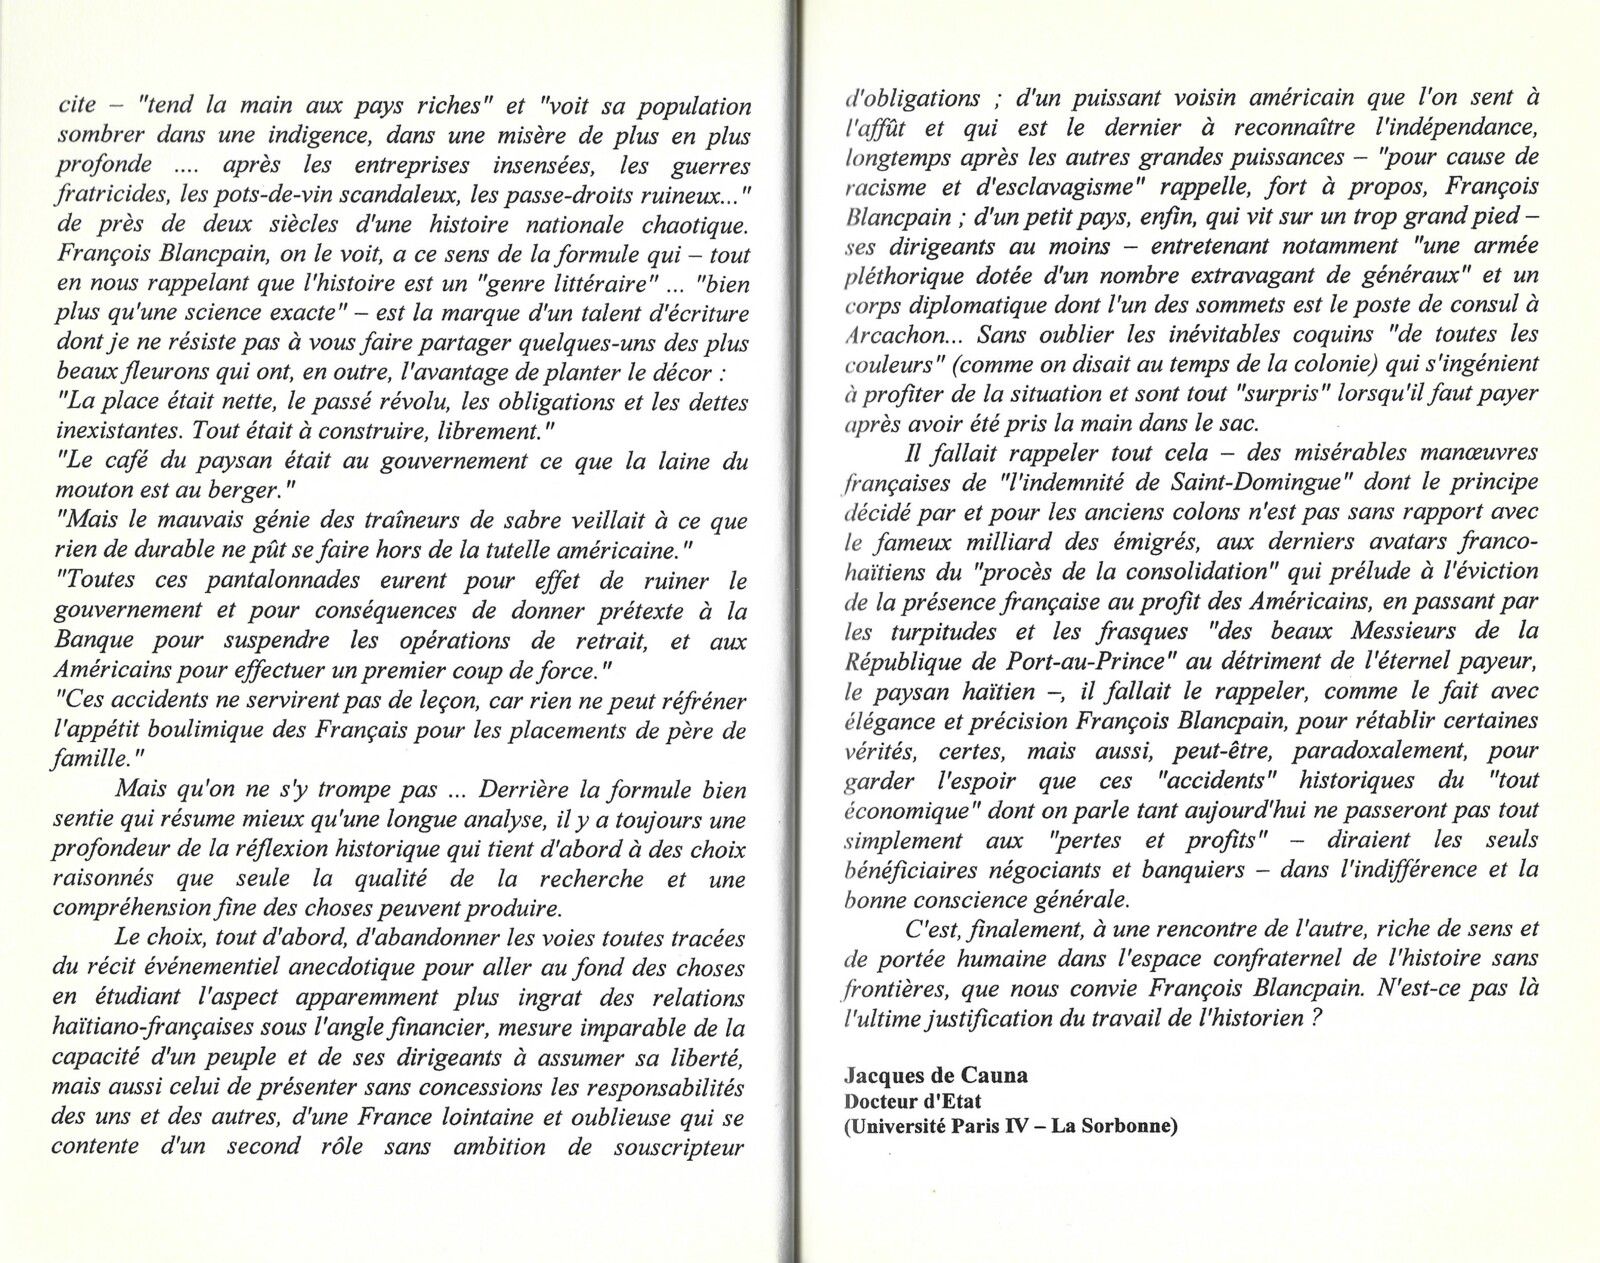 Quatrième de couverture et préface de l'ouvrage de François Blancpain